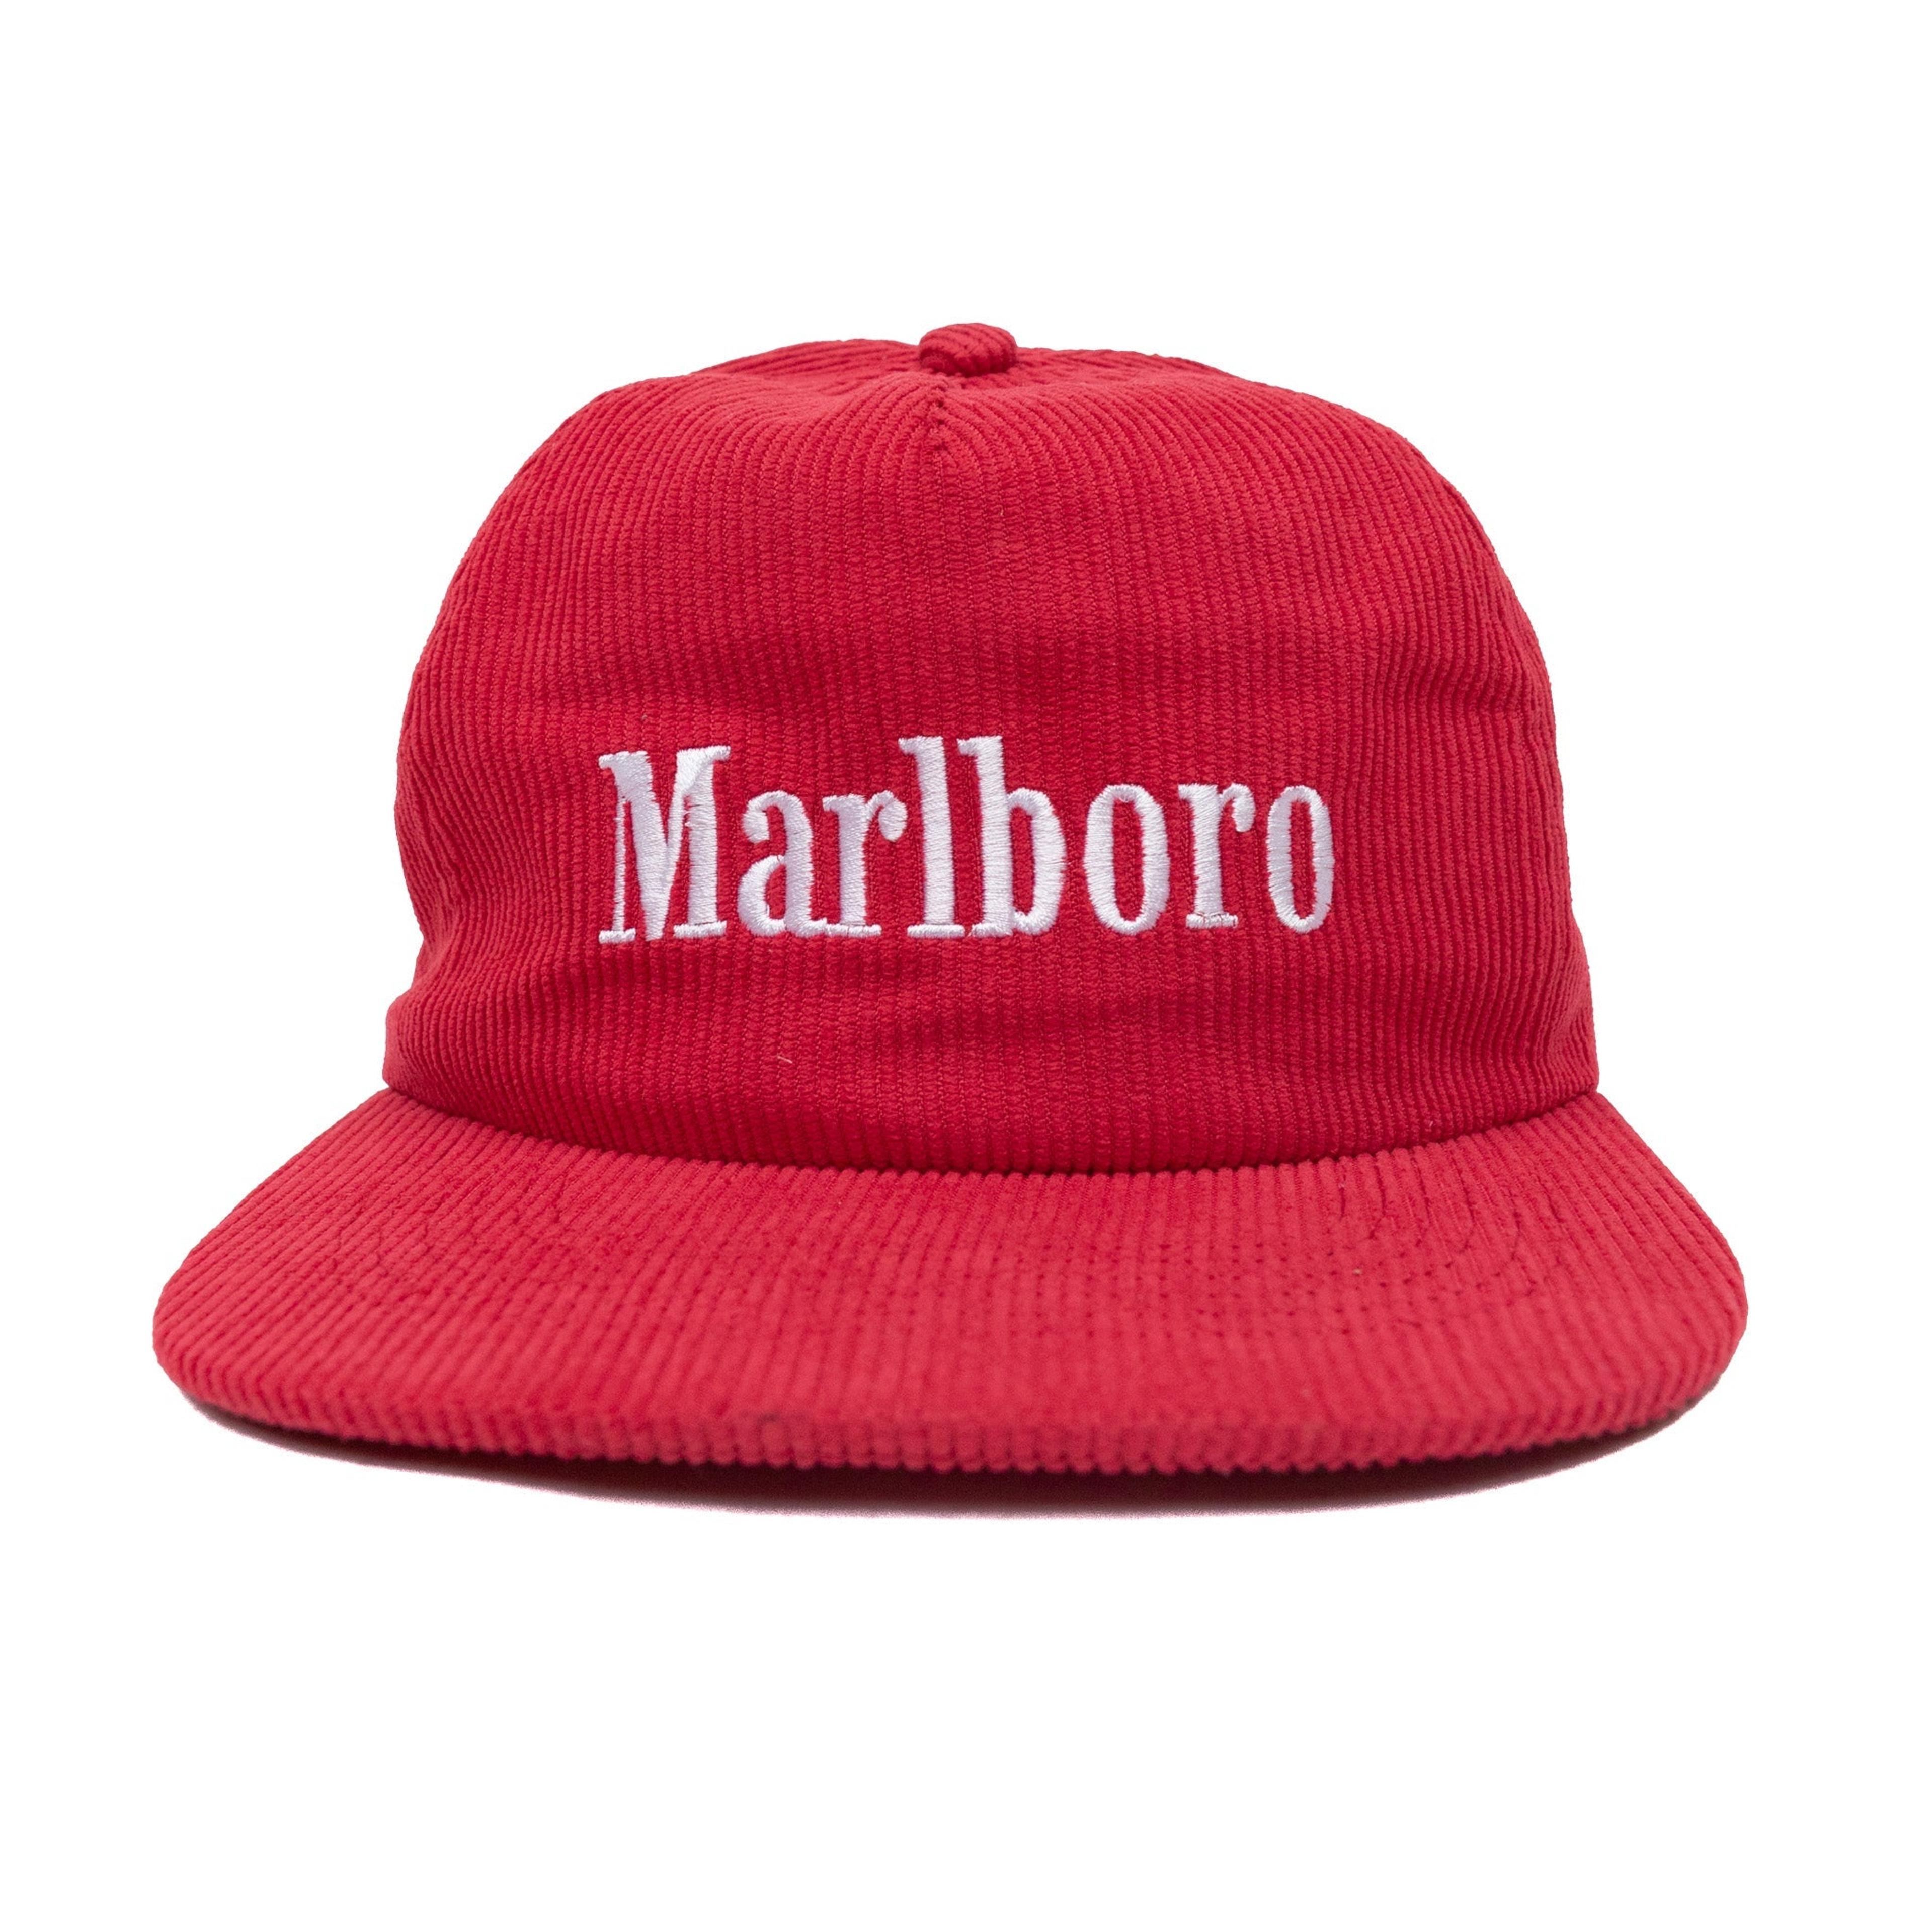 The Deadstock Marlboro Cord Cap